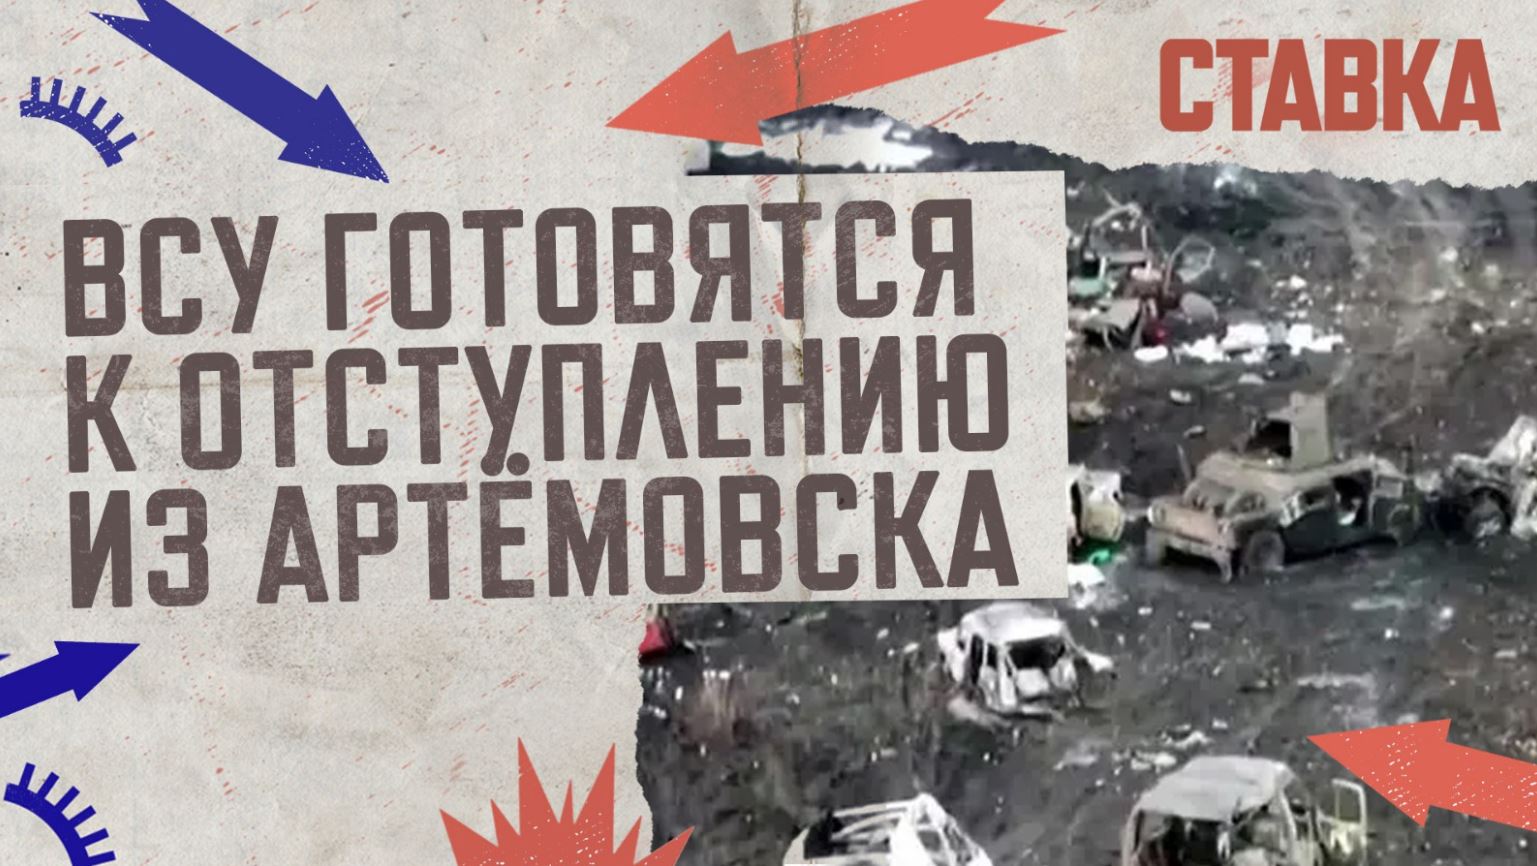 СВО 13.04 | ВСУ готовятся к отступлению из Артёмовска | На Донбасс идут аномальные ливни | СТАВКА